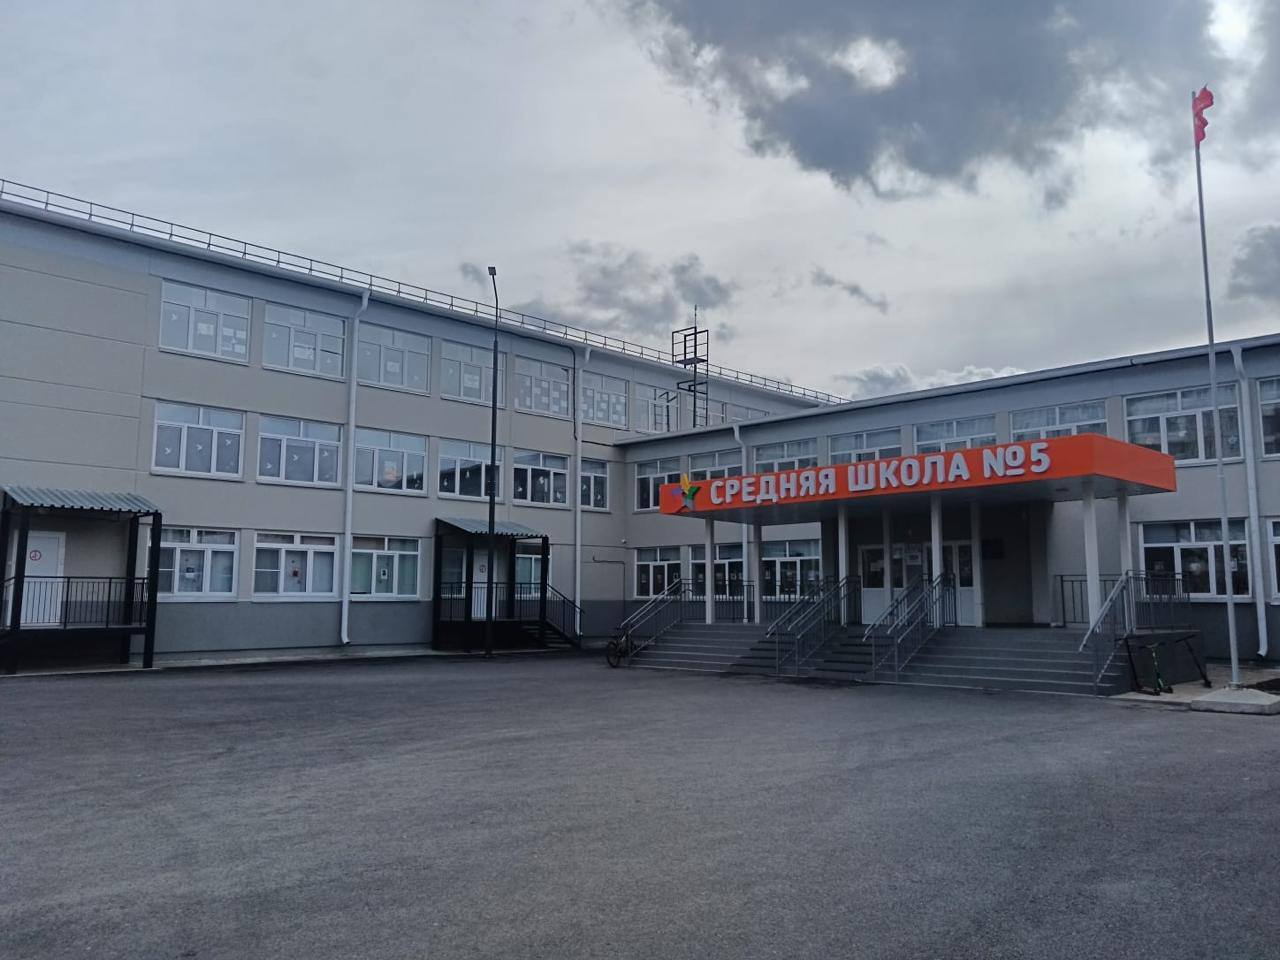 Красноярскую школу №5 откапиталили после вмешательства прокуратуры